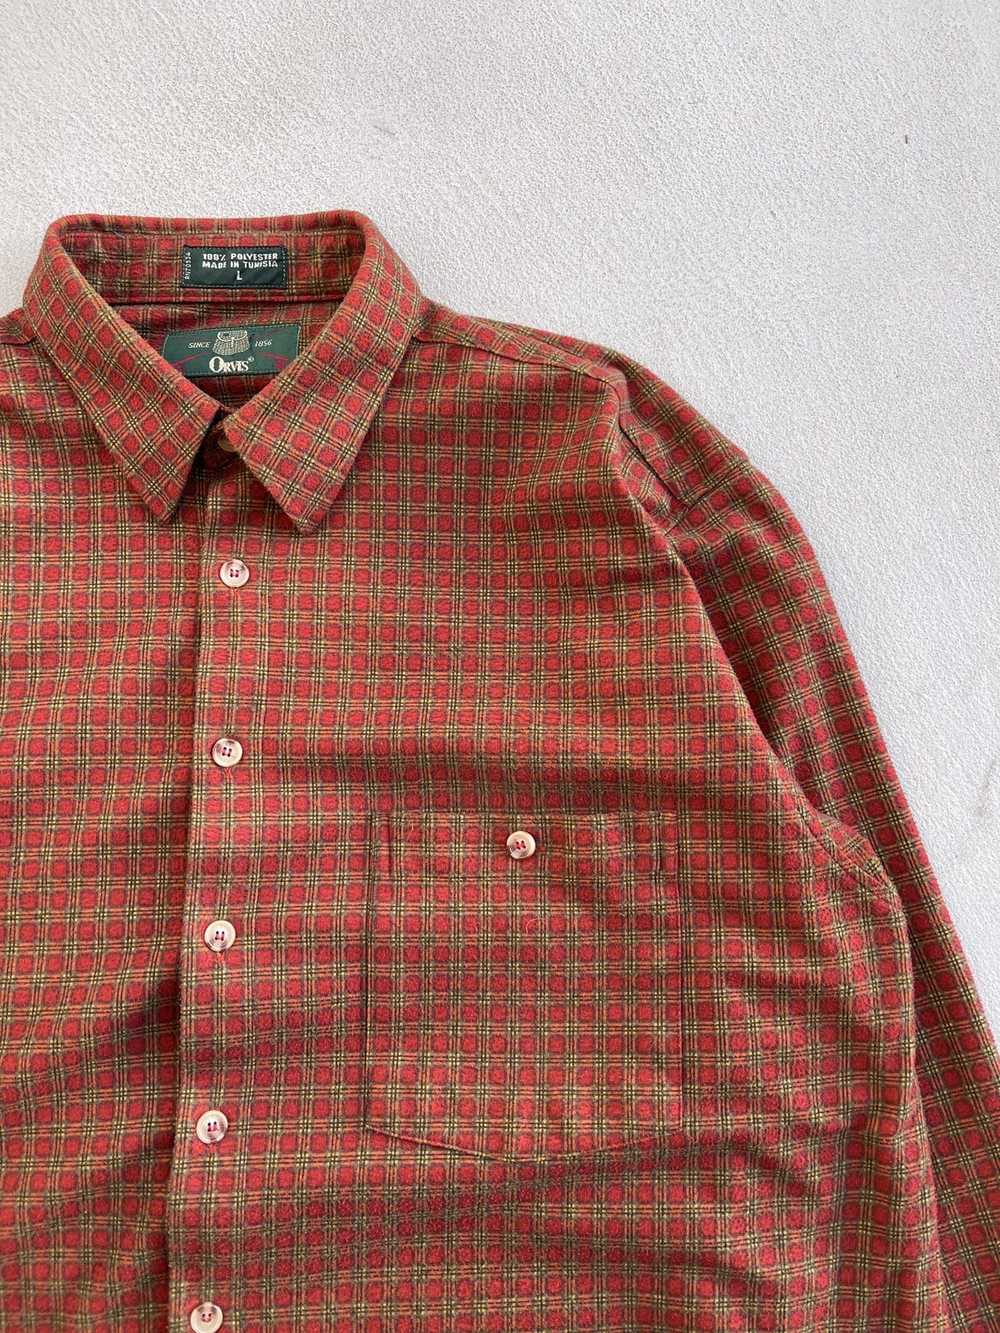 Vintage 1980s Orvis Pocket Flannel Shirt - image 2